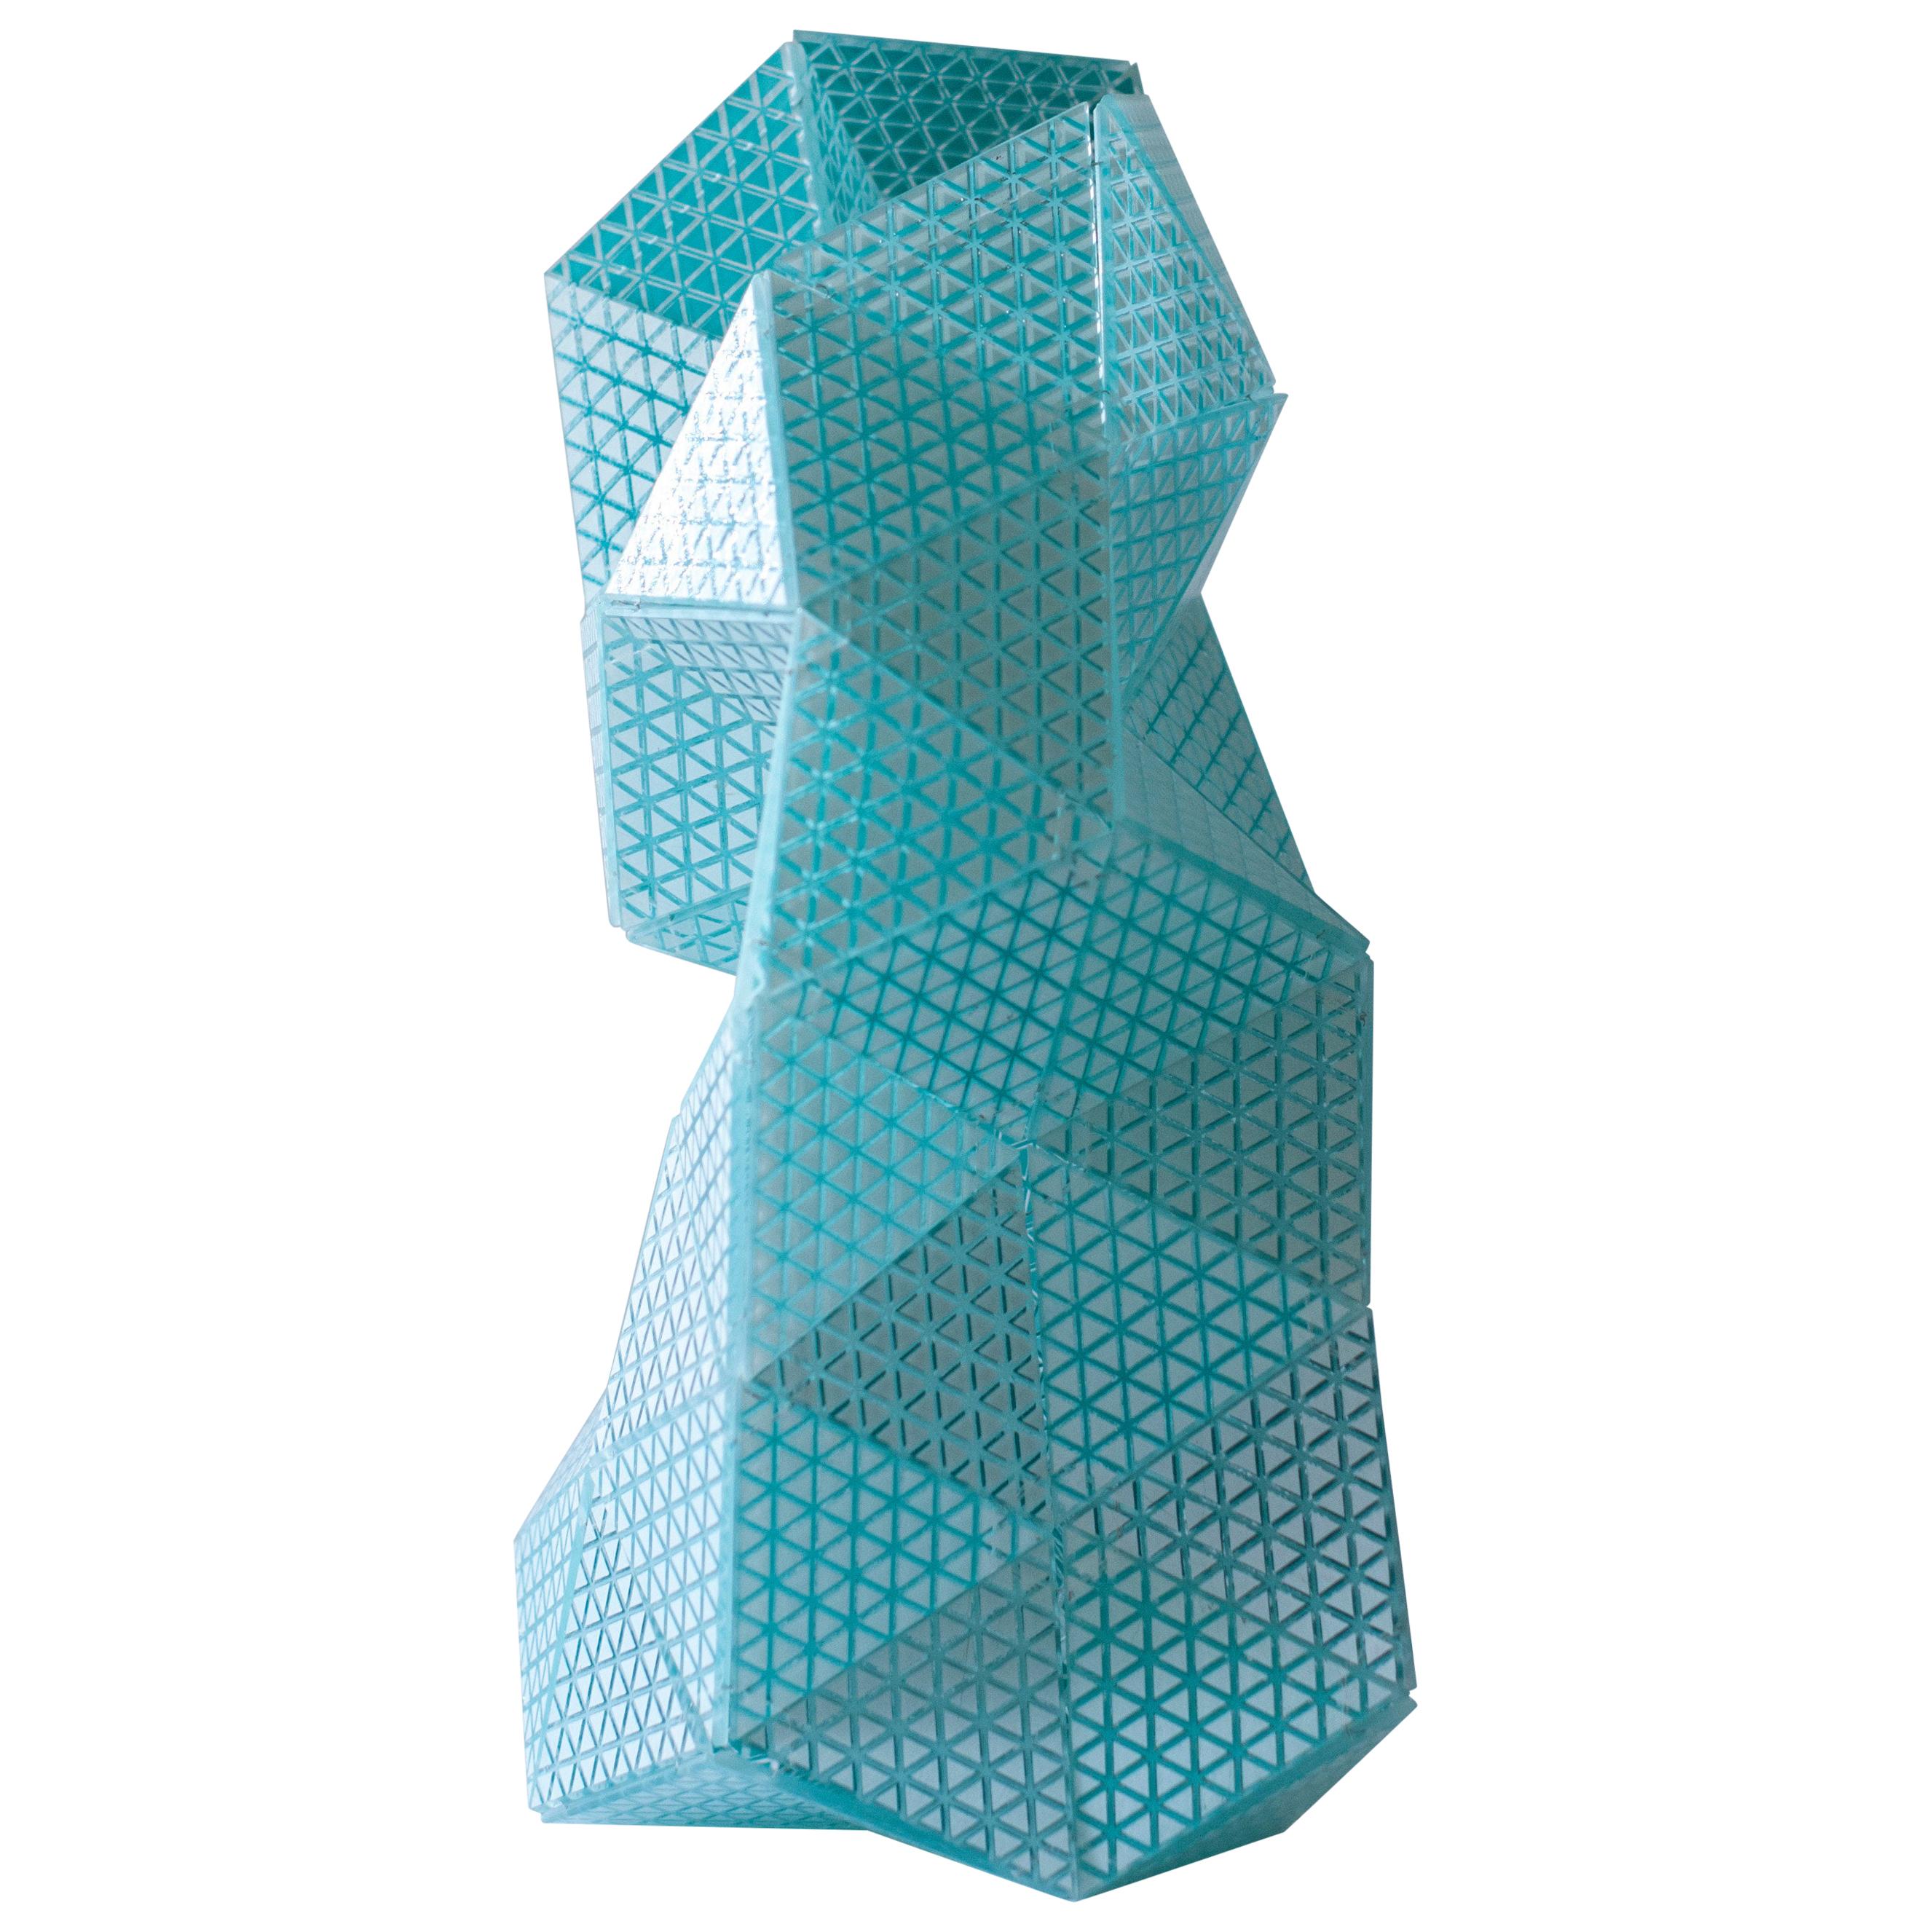 Touch-me 1.0, handgefertigte Vase aus Muranoglas von Matteo Silverio